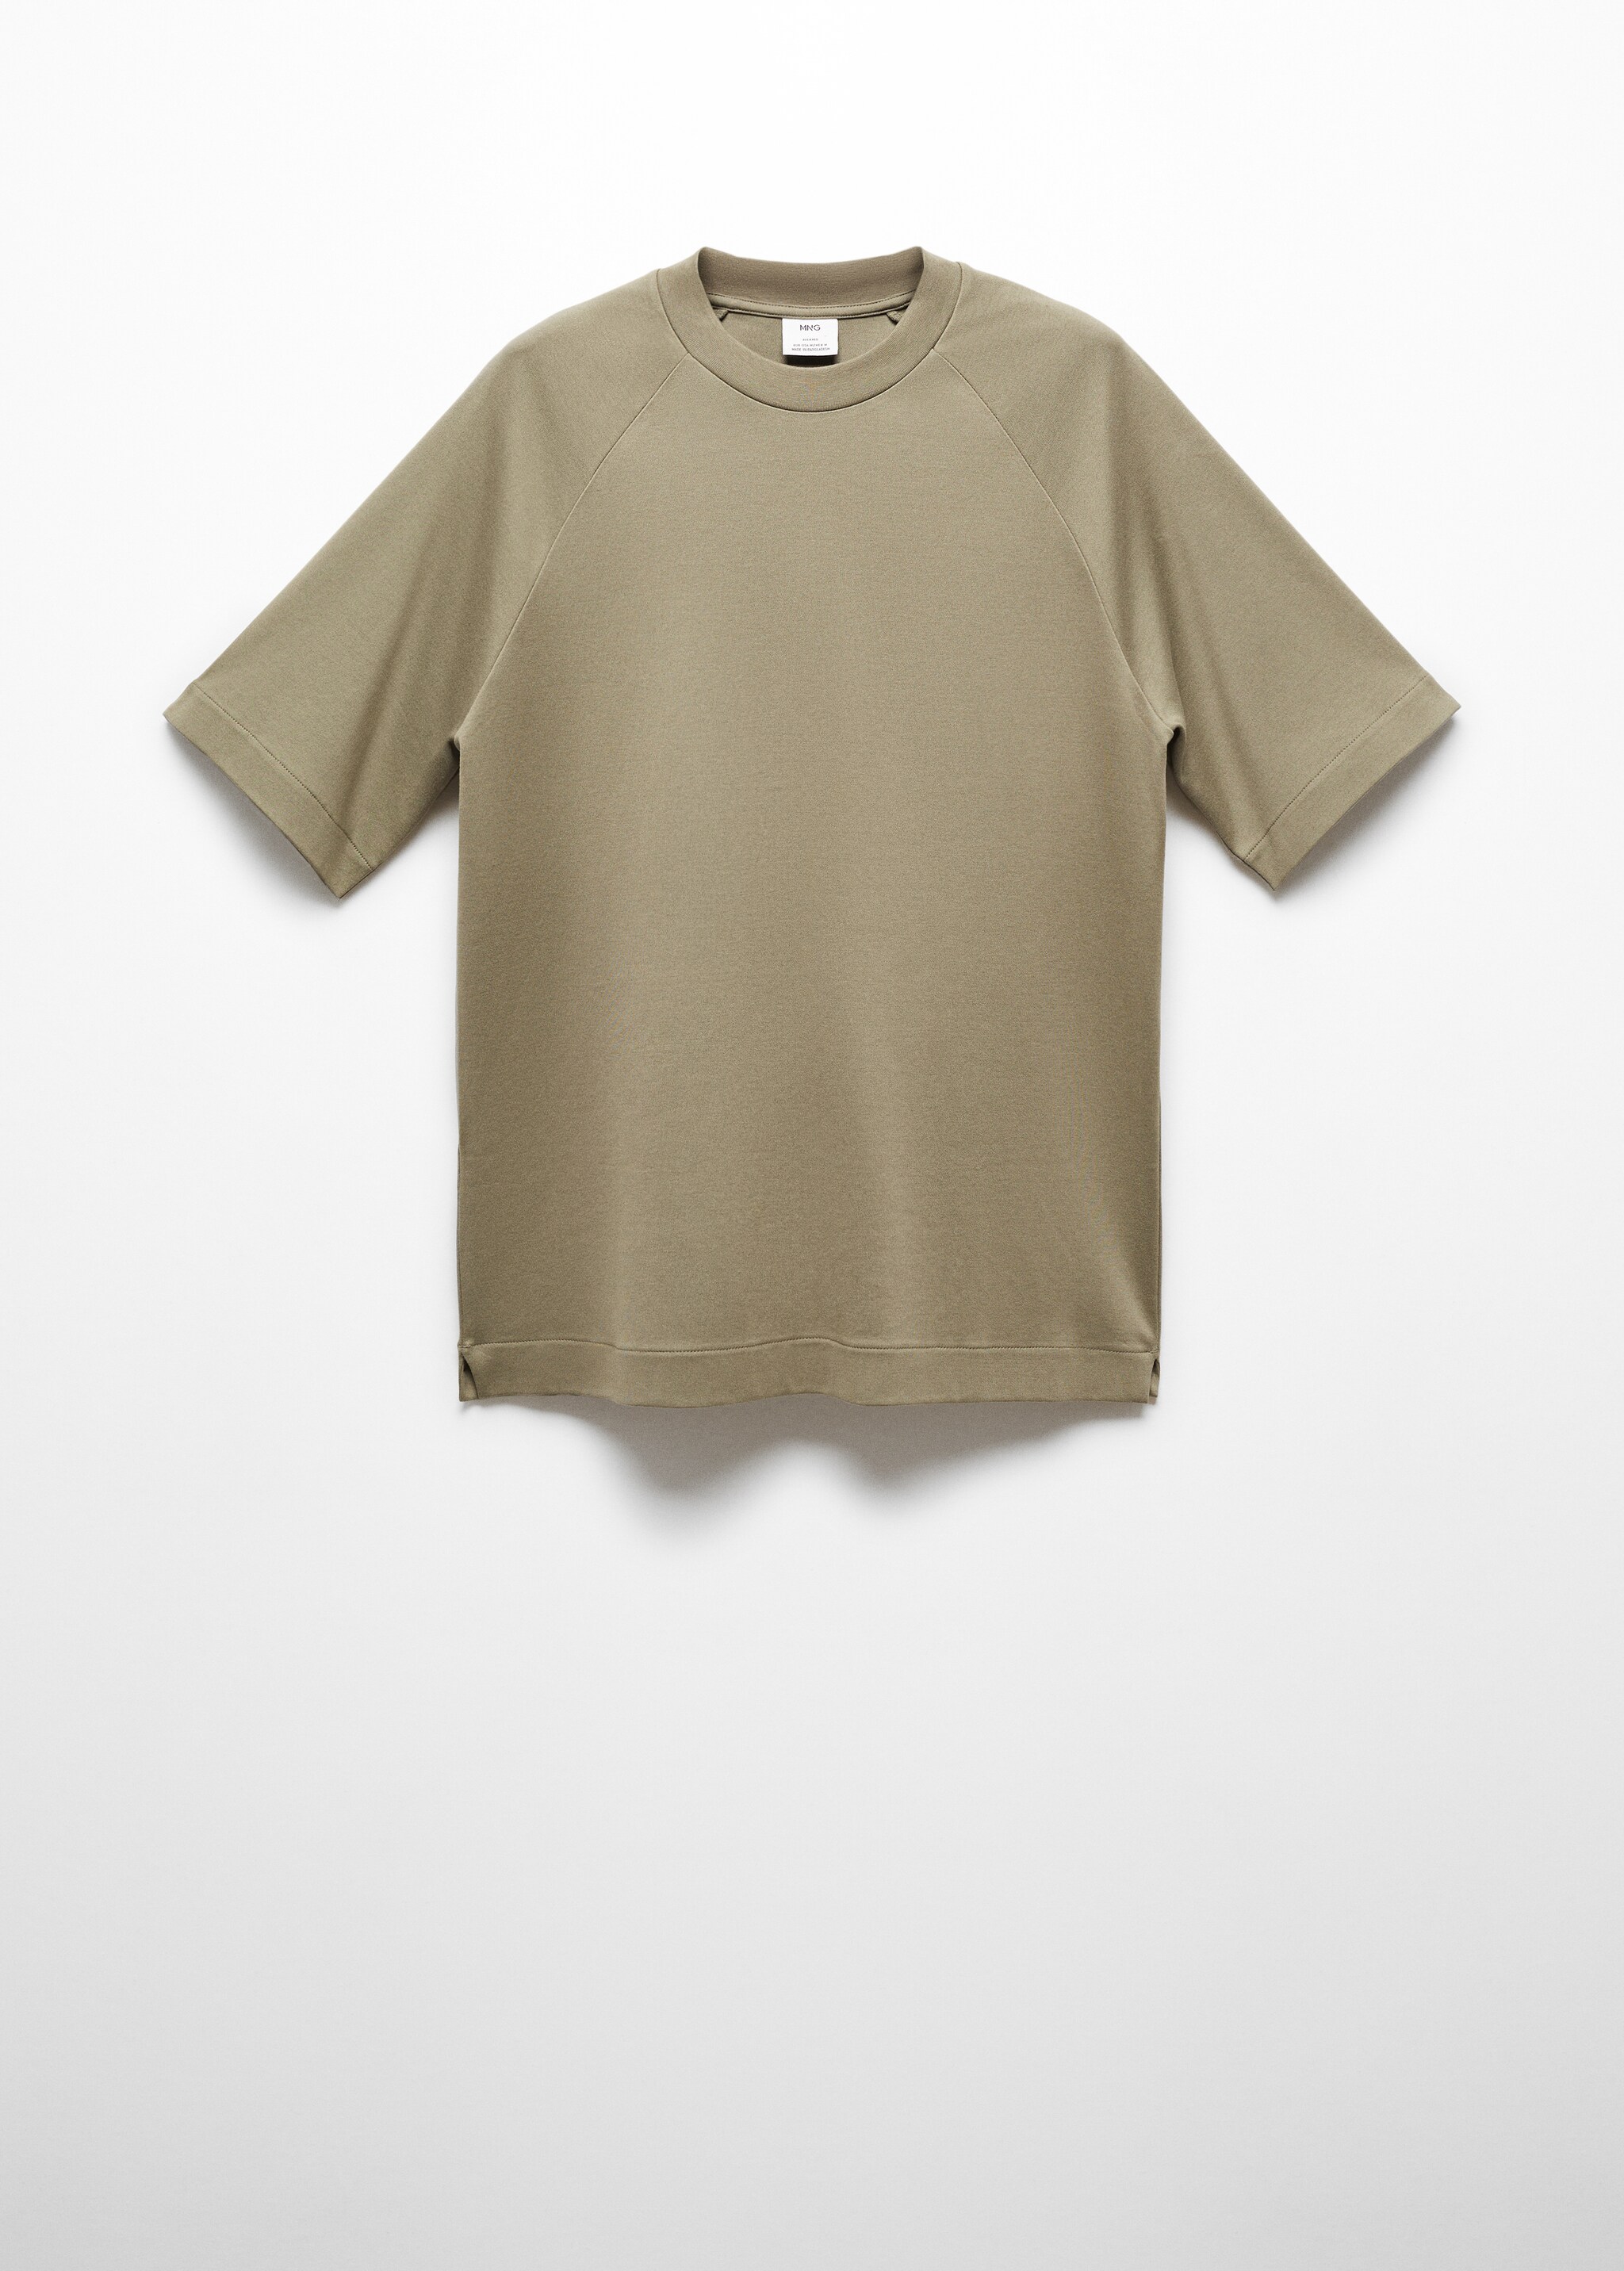 Camiseta 100% algodón relaxed fit - Artículo sin modelo